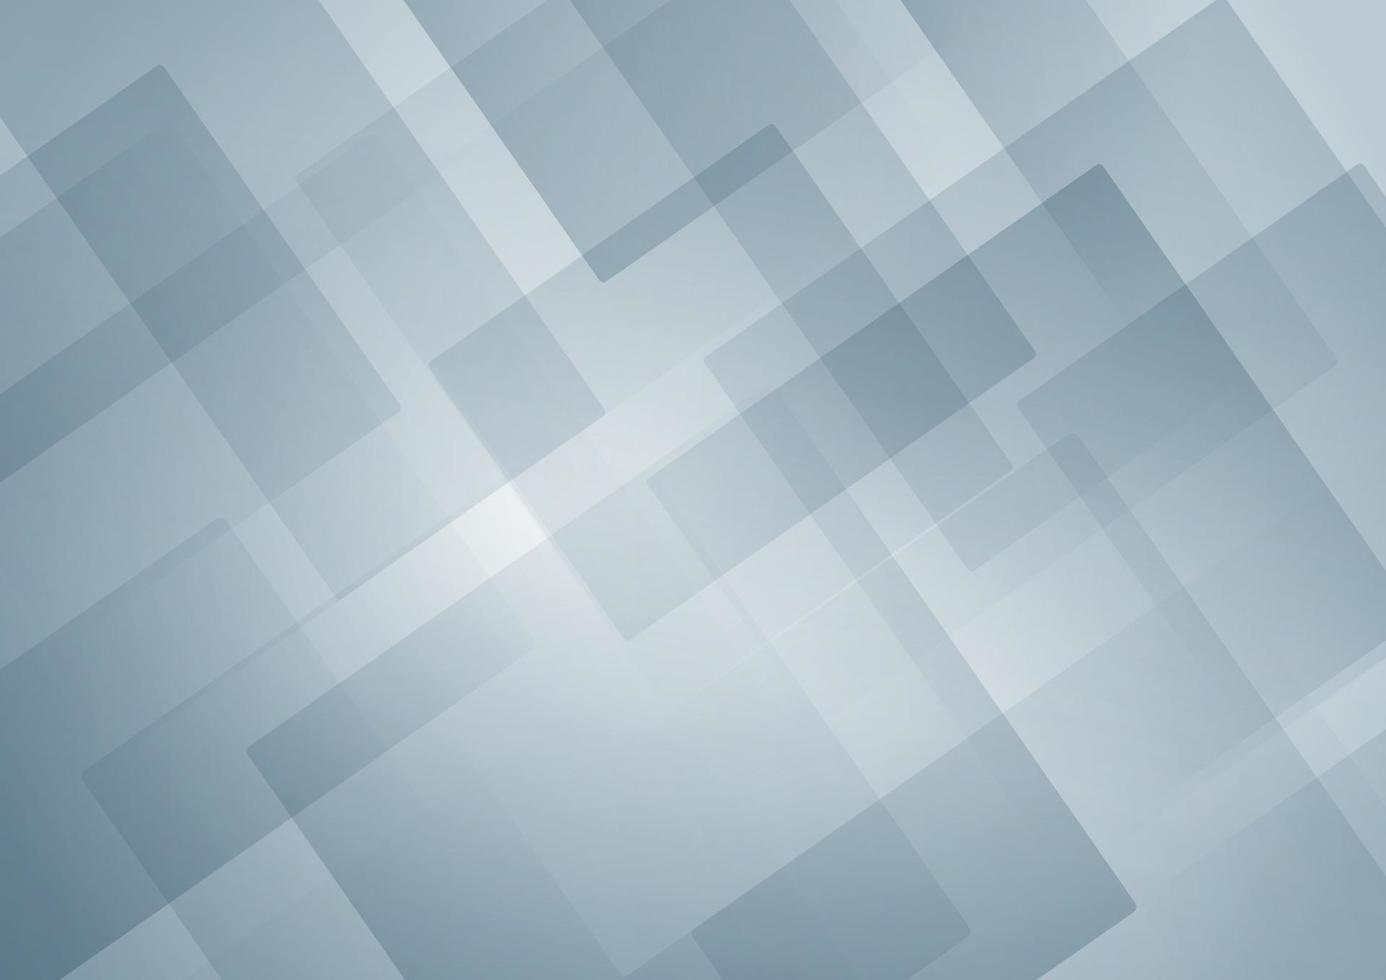 abstrato de forma quadrada geométrica branca e azul sobreposta ao fundo vetor